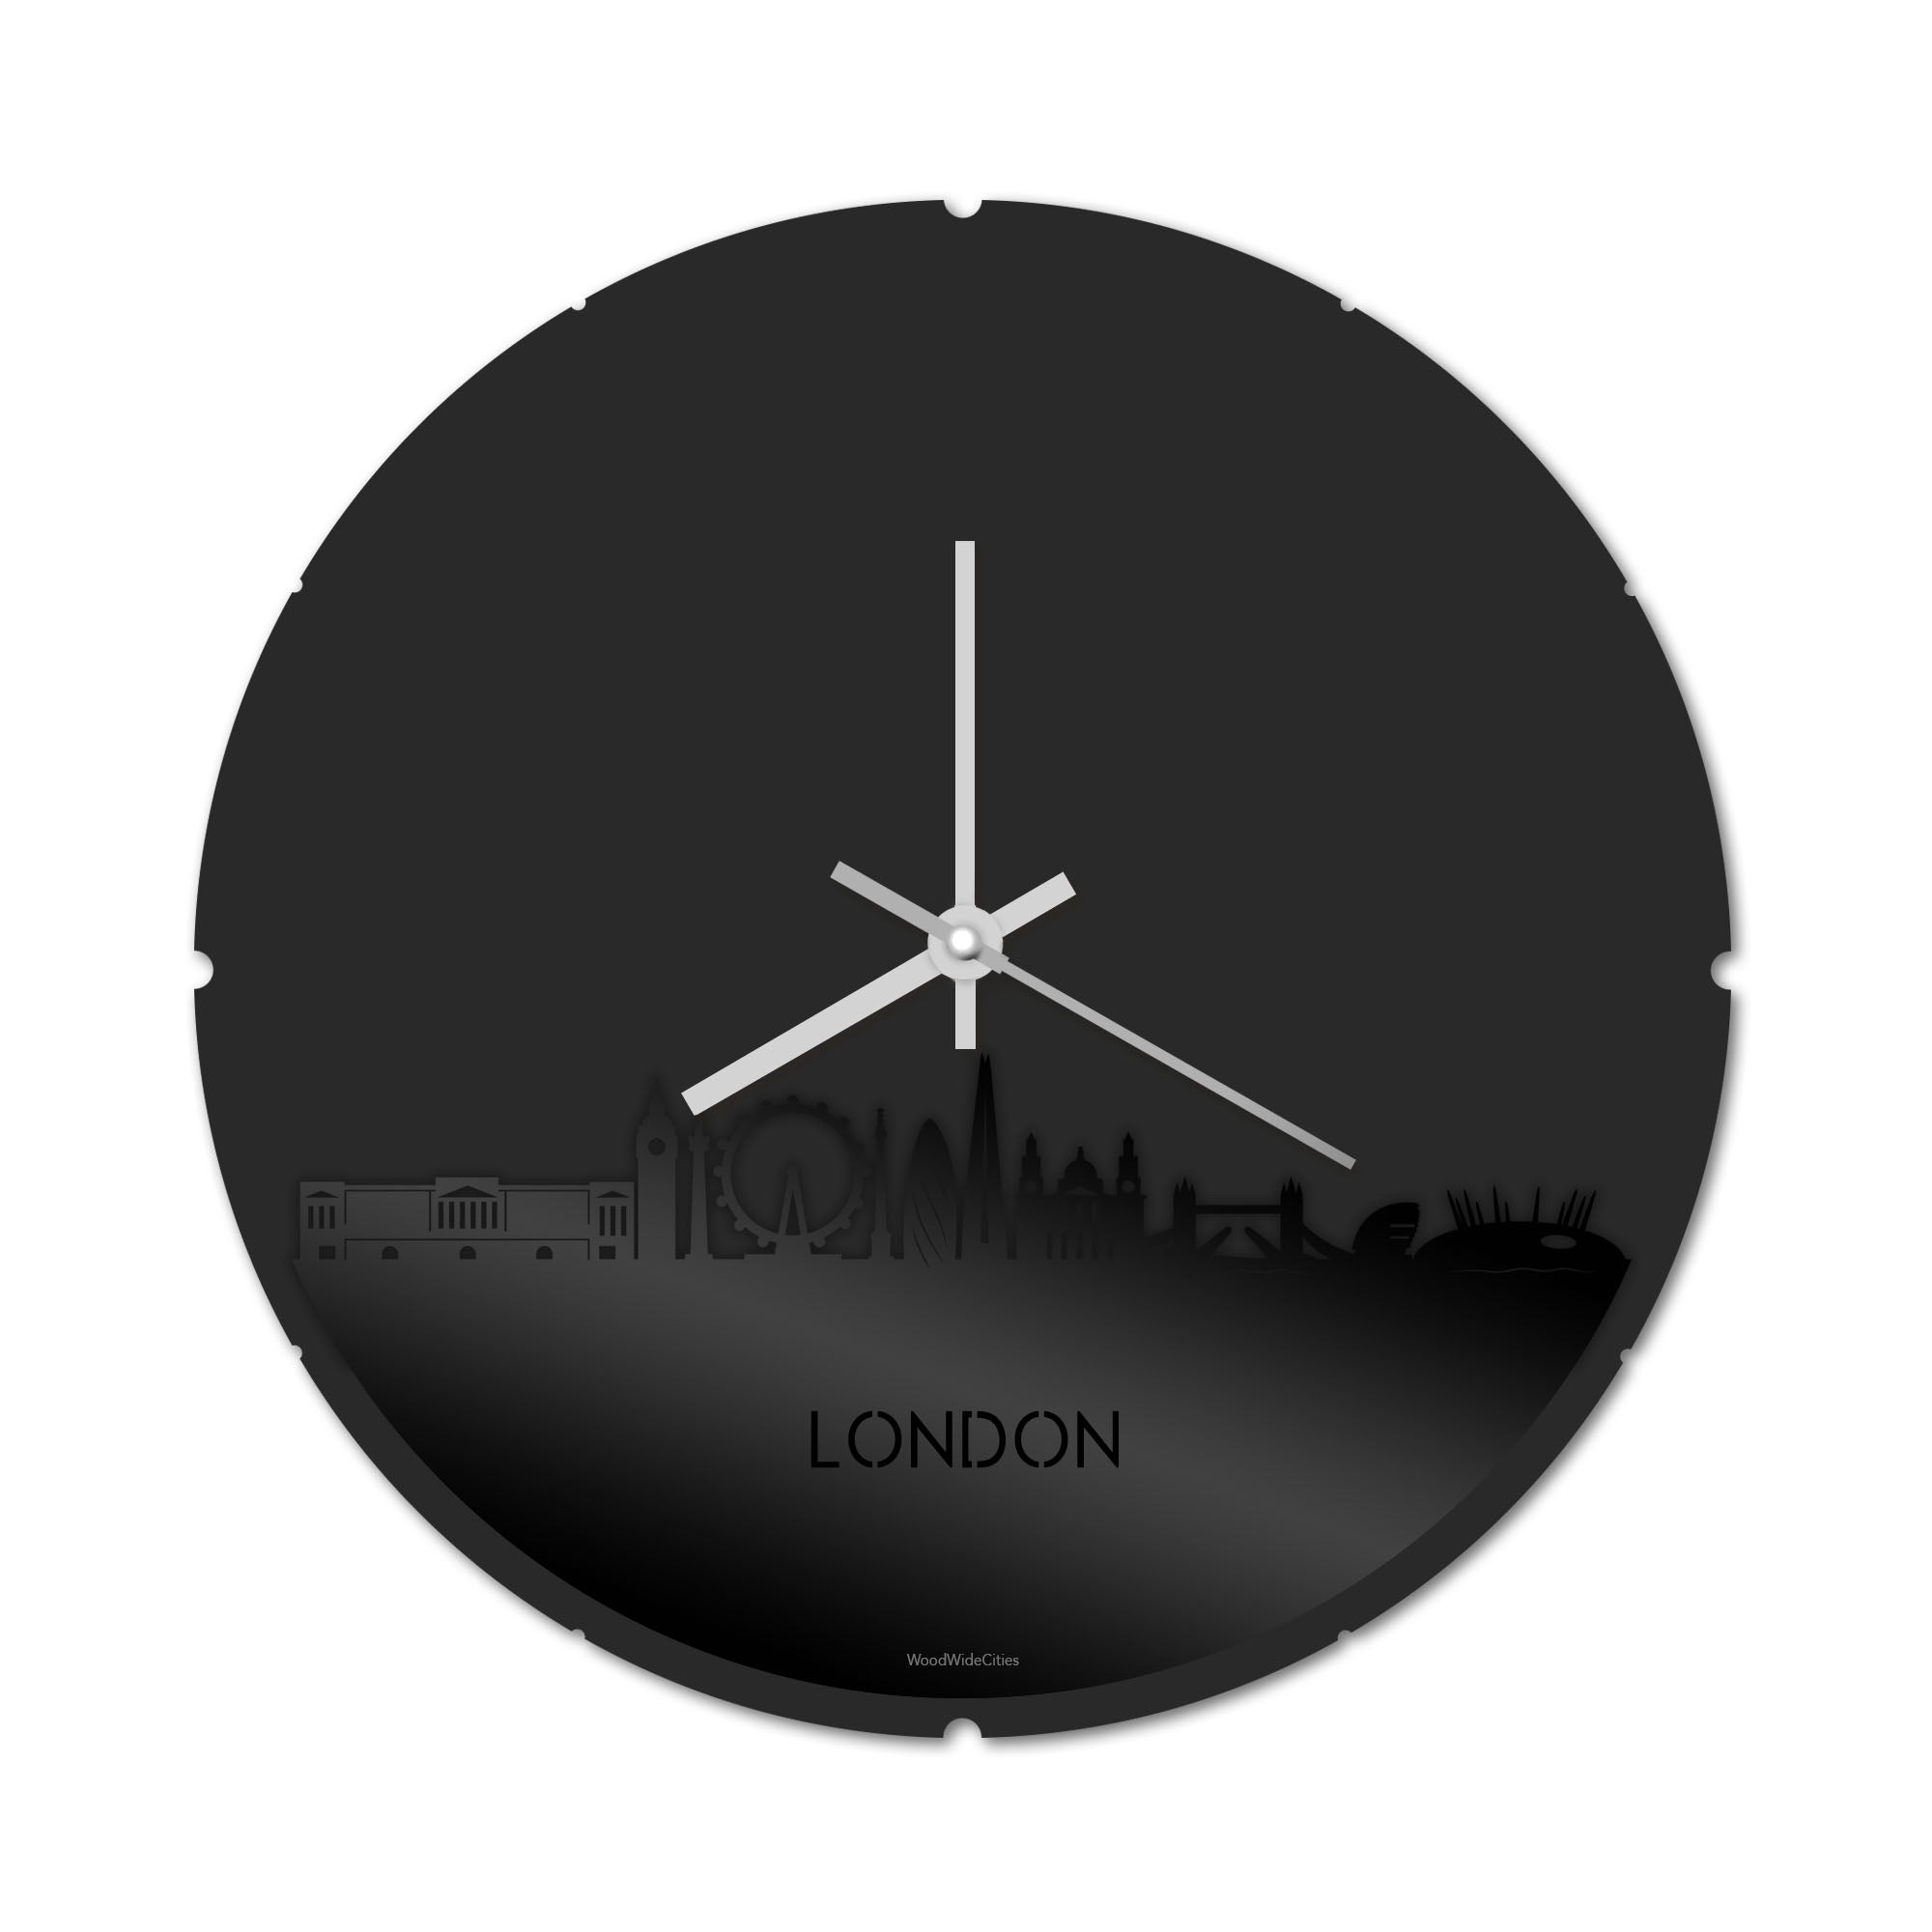 Skyline Klok Rond London Zwart glanzend gerecycled kunststof cadeau decoratie relatiegeschenk van WoodWideCities